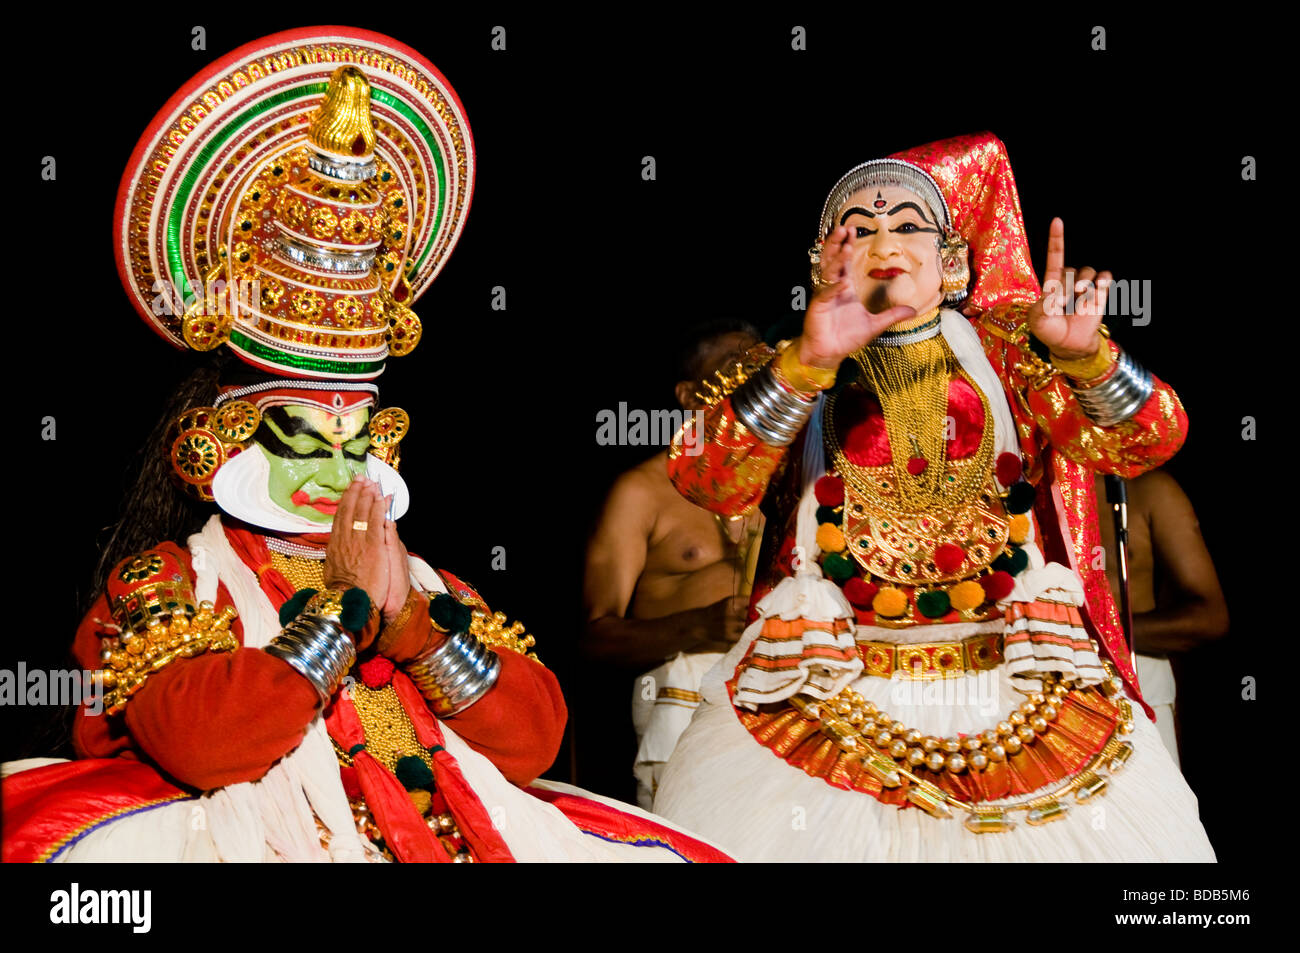 La performance sur scène - danse traditionnelle indienne Kathakali - Rugmangadhacharitham Banque D'Images